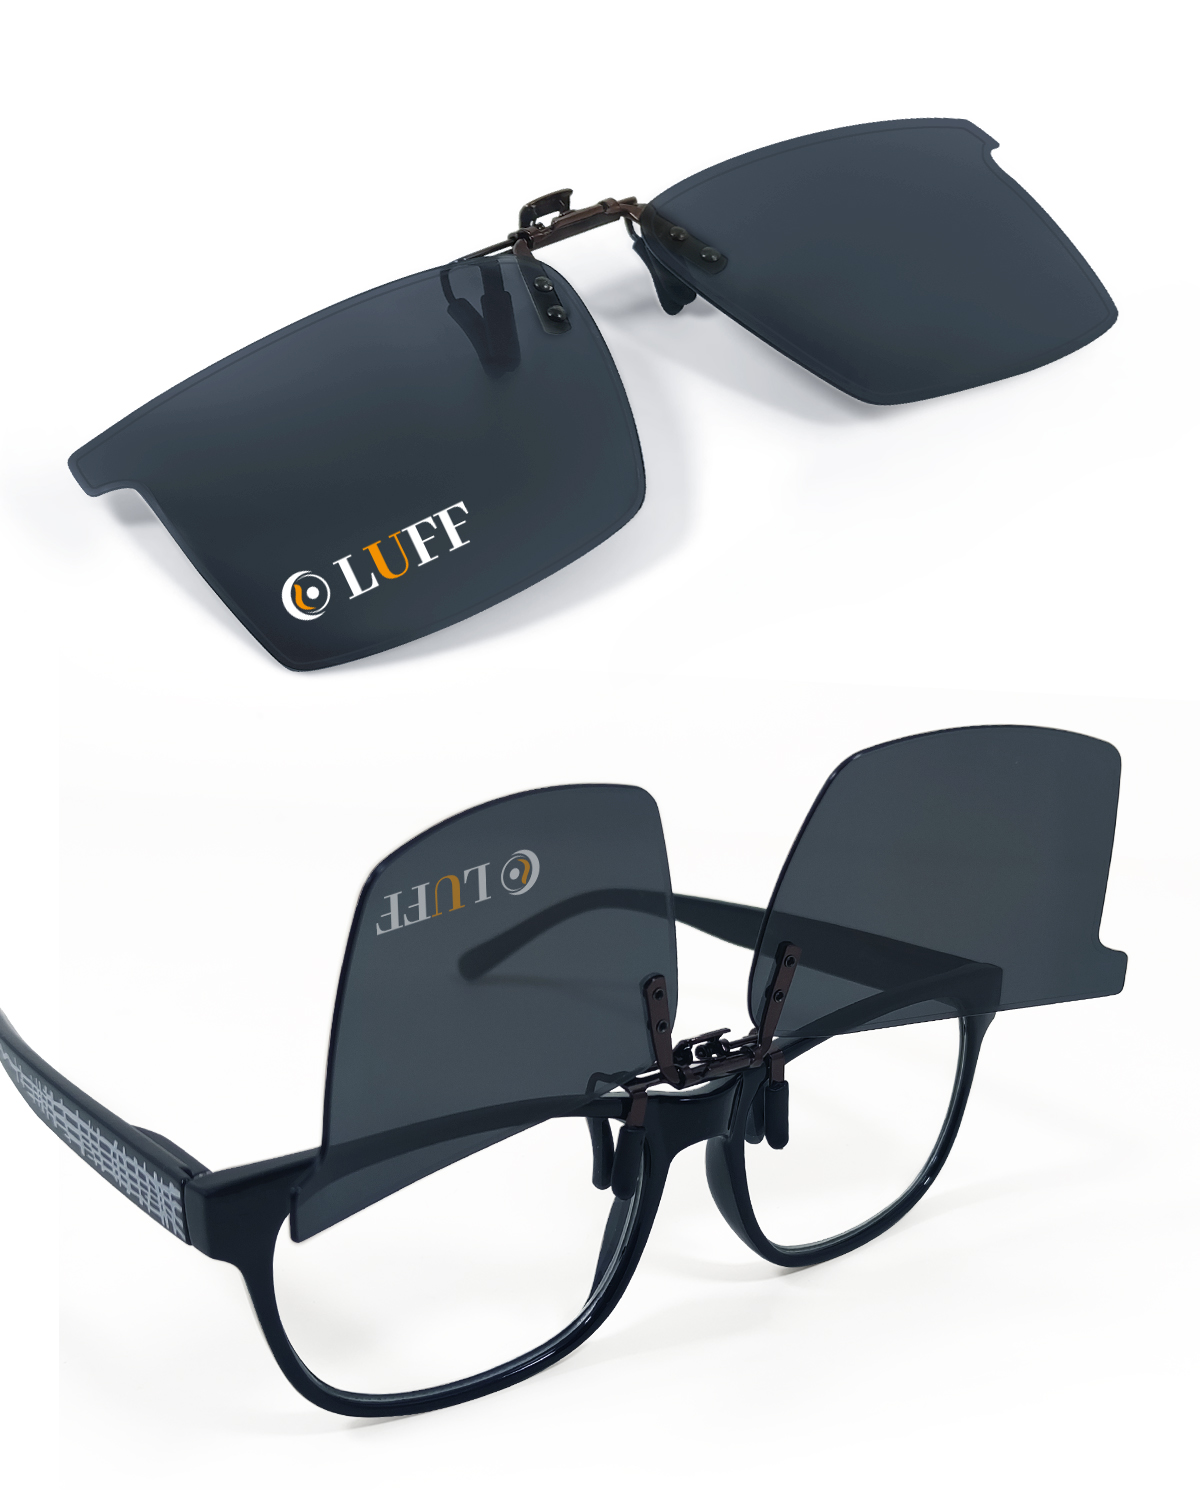 LUFF Polarized Clip-On Sunglasses for Men/Women Flip Up over Eyeglasses Glasses Anti-Glare UV400 Protection for Driving